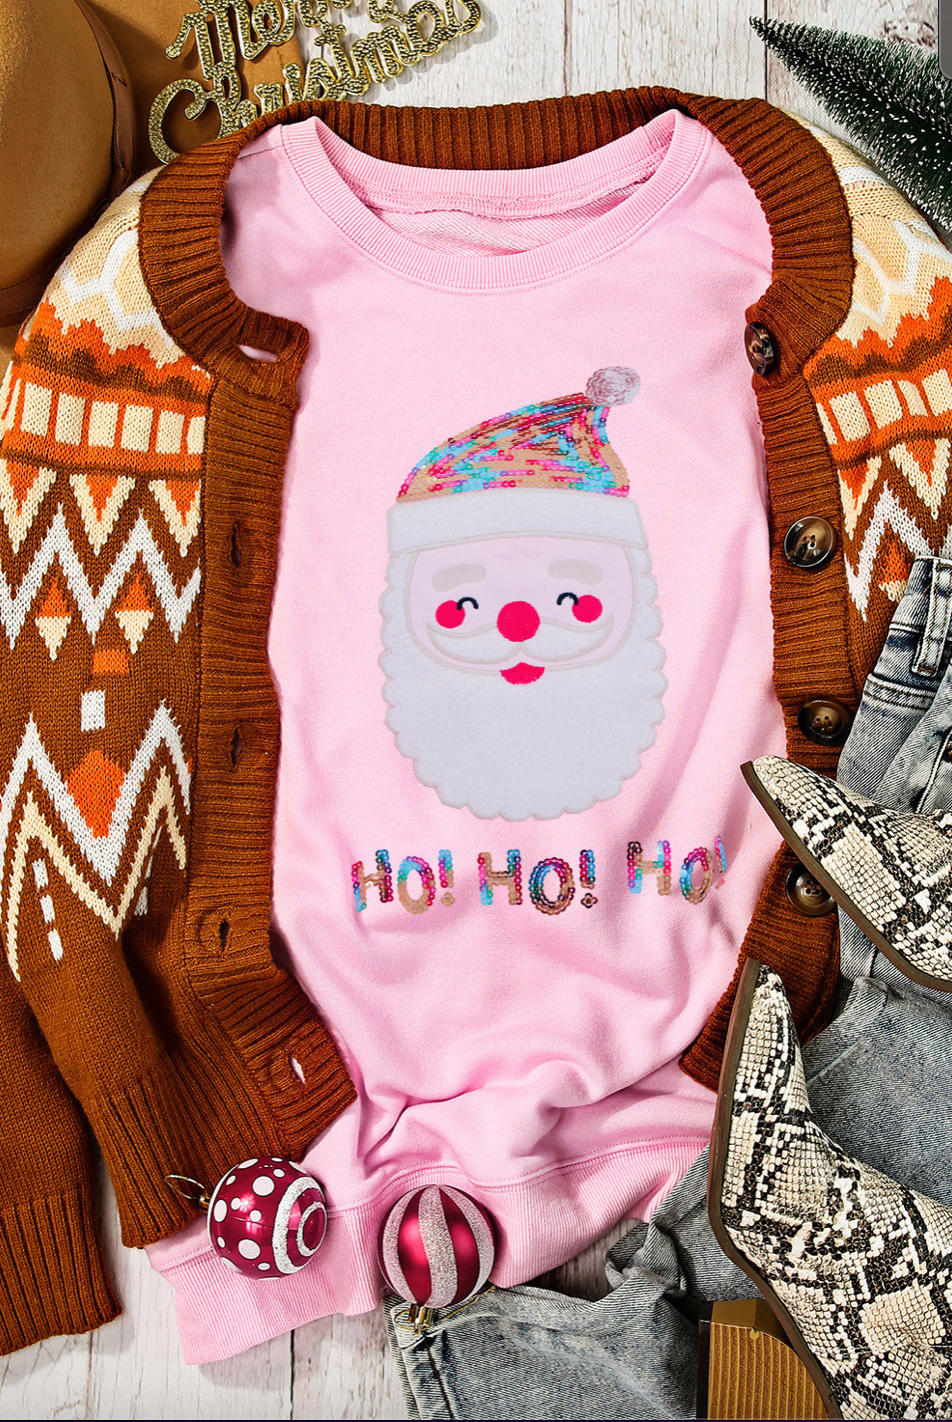 Santa Ho Ho Ho Sequined Sweatshirt-Graphic Sweatshirts-Podos Boutique, a Women's Fashion Boutique Located in Calera, AL